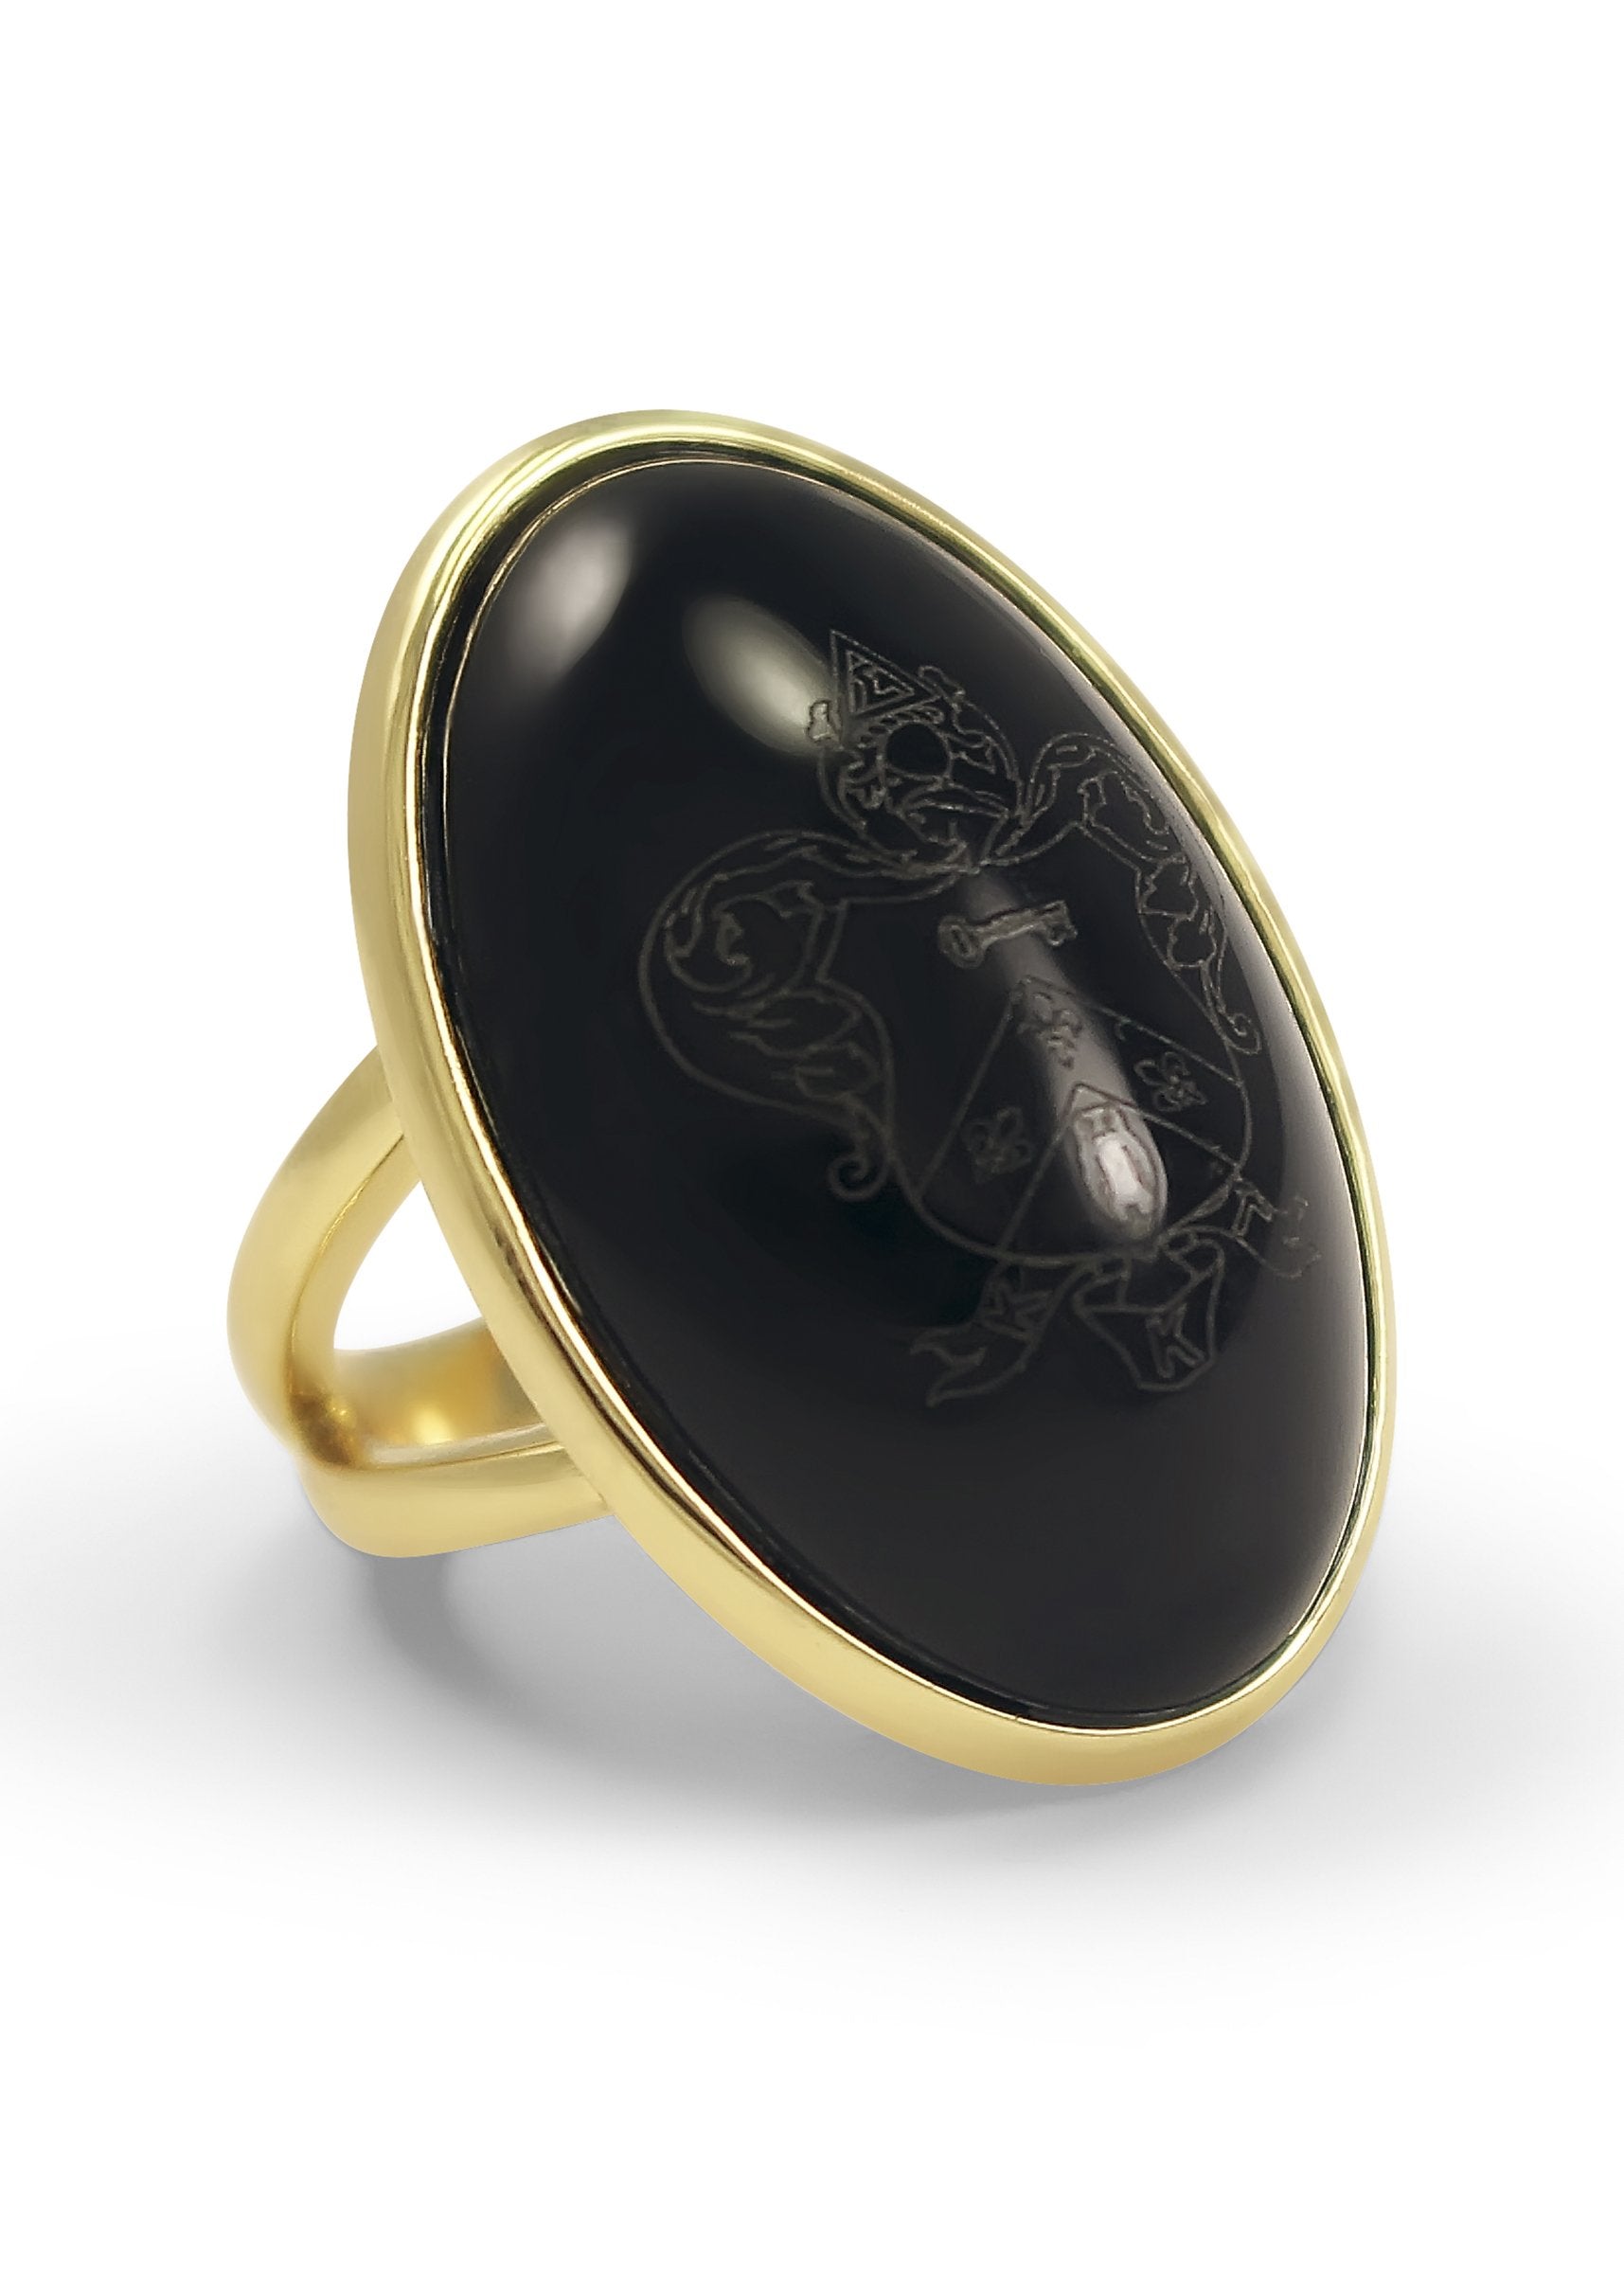 geboorte handtekening gebruik Kappa Kappa Gamma Crest Ring | KKG Ring for Sale - The Collegiate Standard